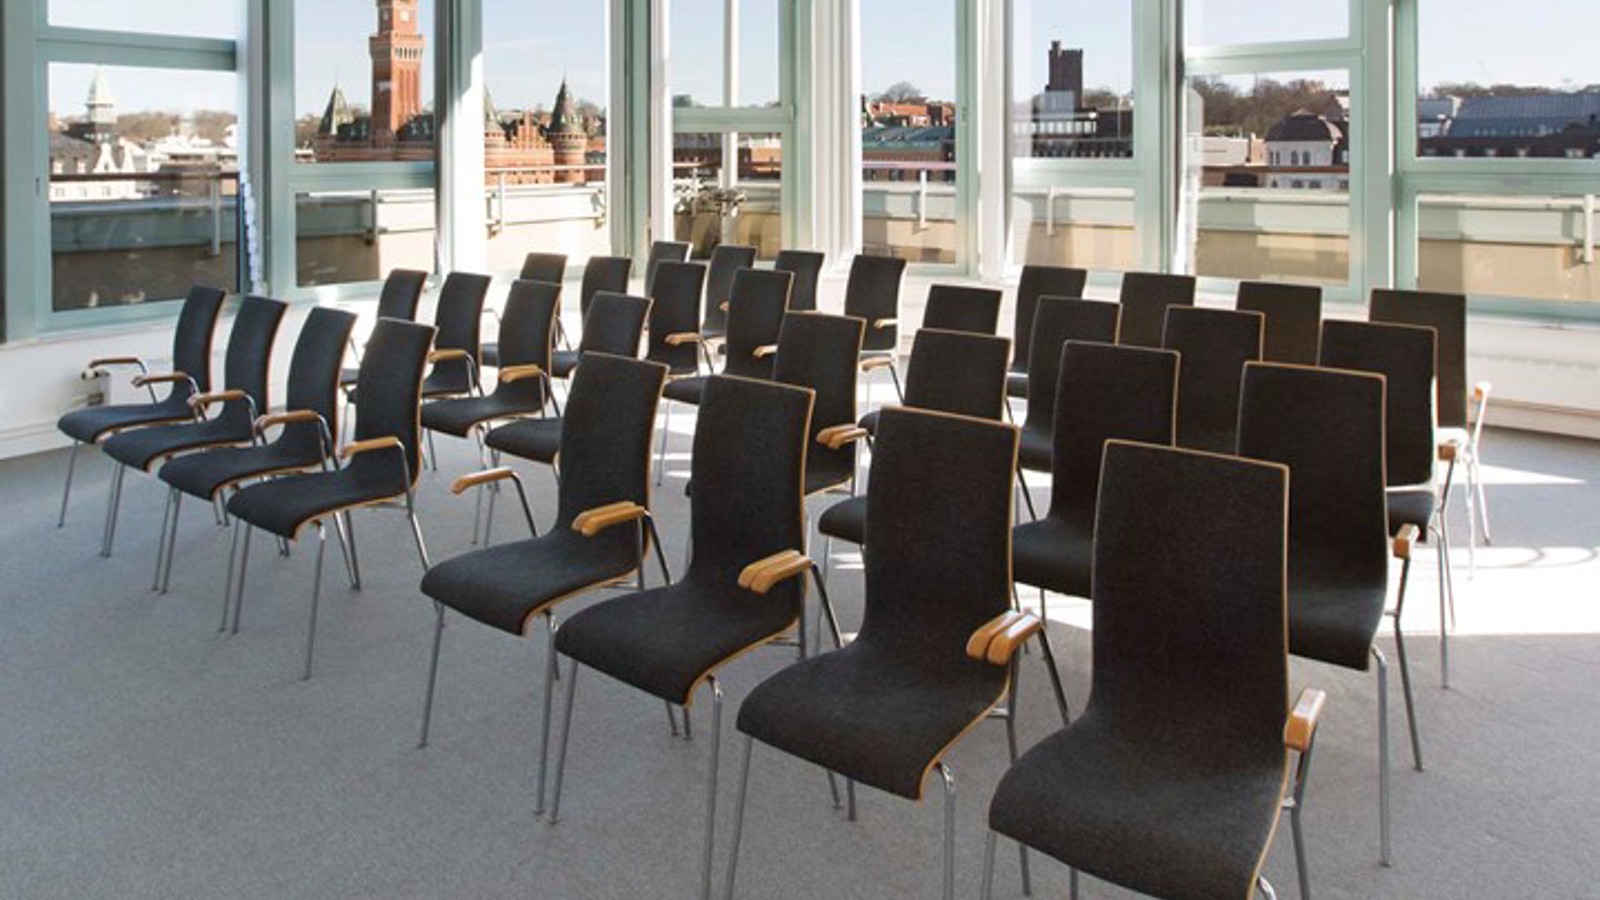 Konferensrum med biosittning, svarta stolar, grå matta och stora fönster med utsikt